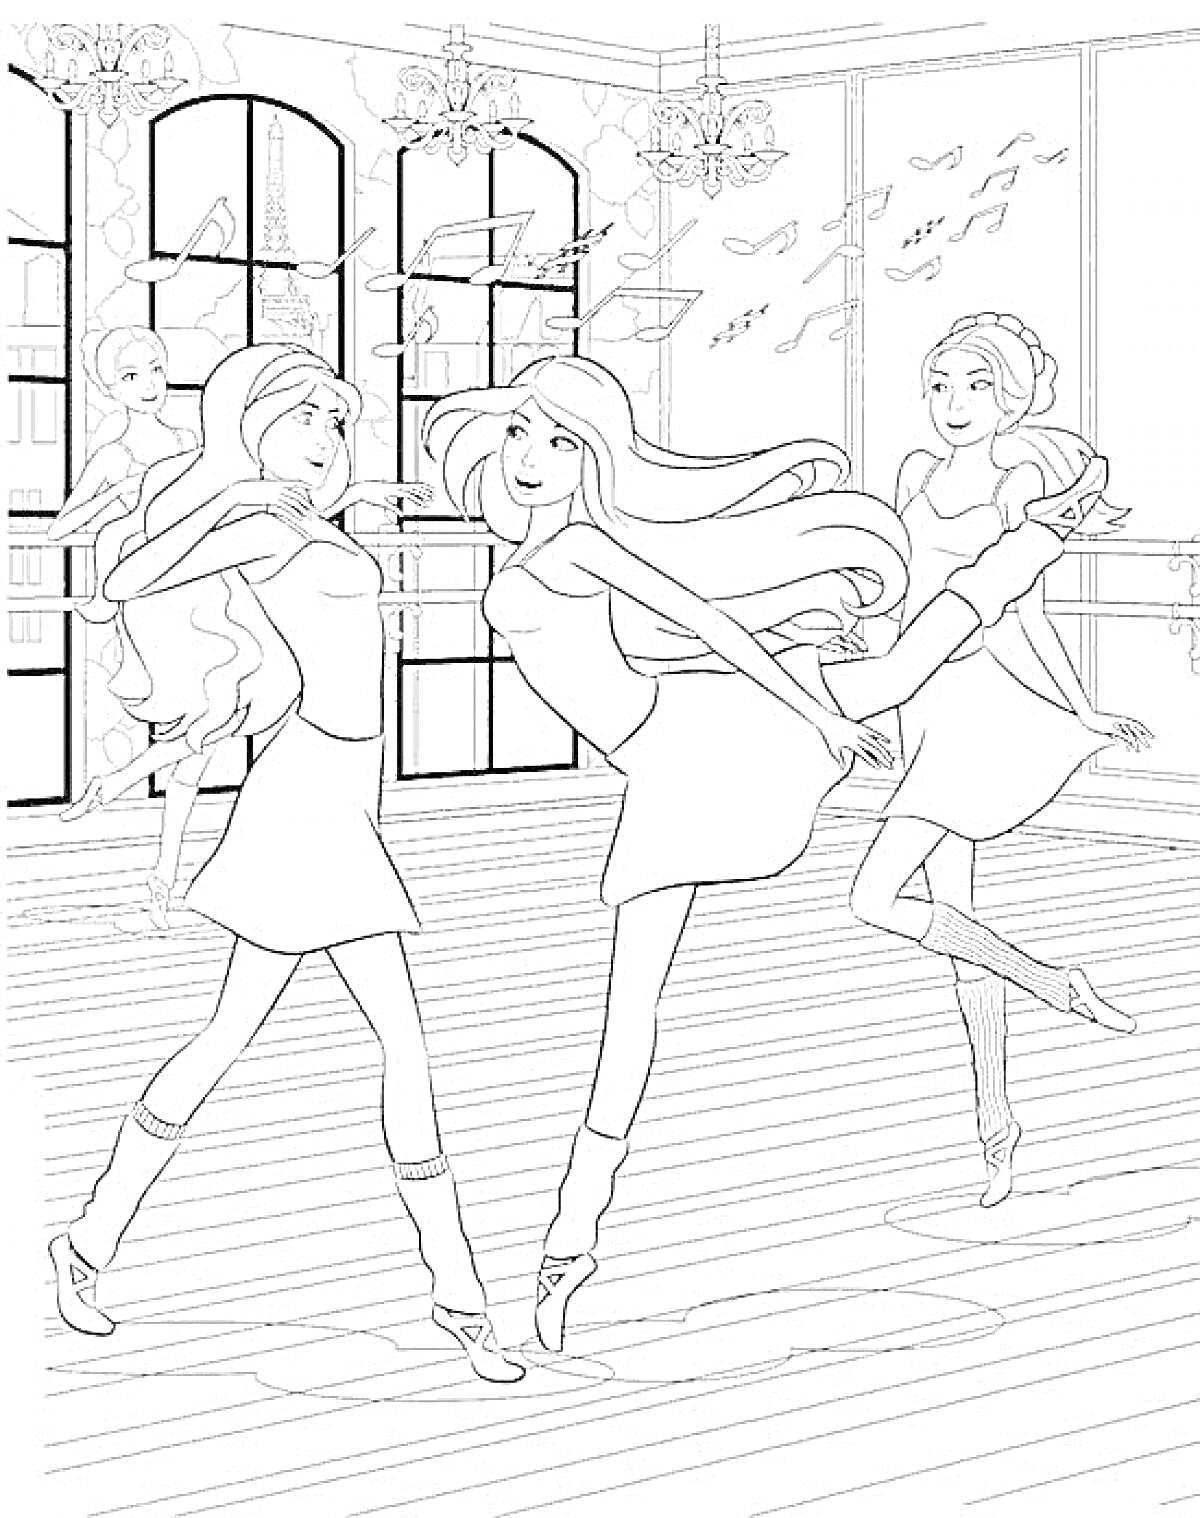 Балетная студия с тремя танцующими балеринами и одной балериной у зеркала, музыкальные ноты на стене, люстры на потолке, большие окна